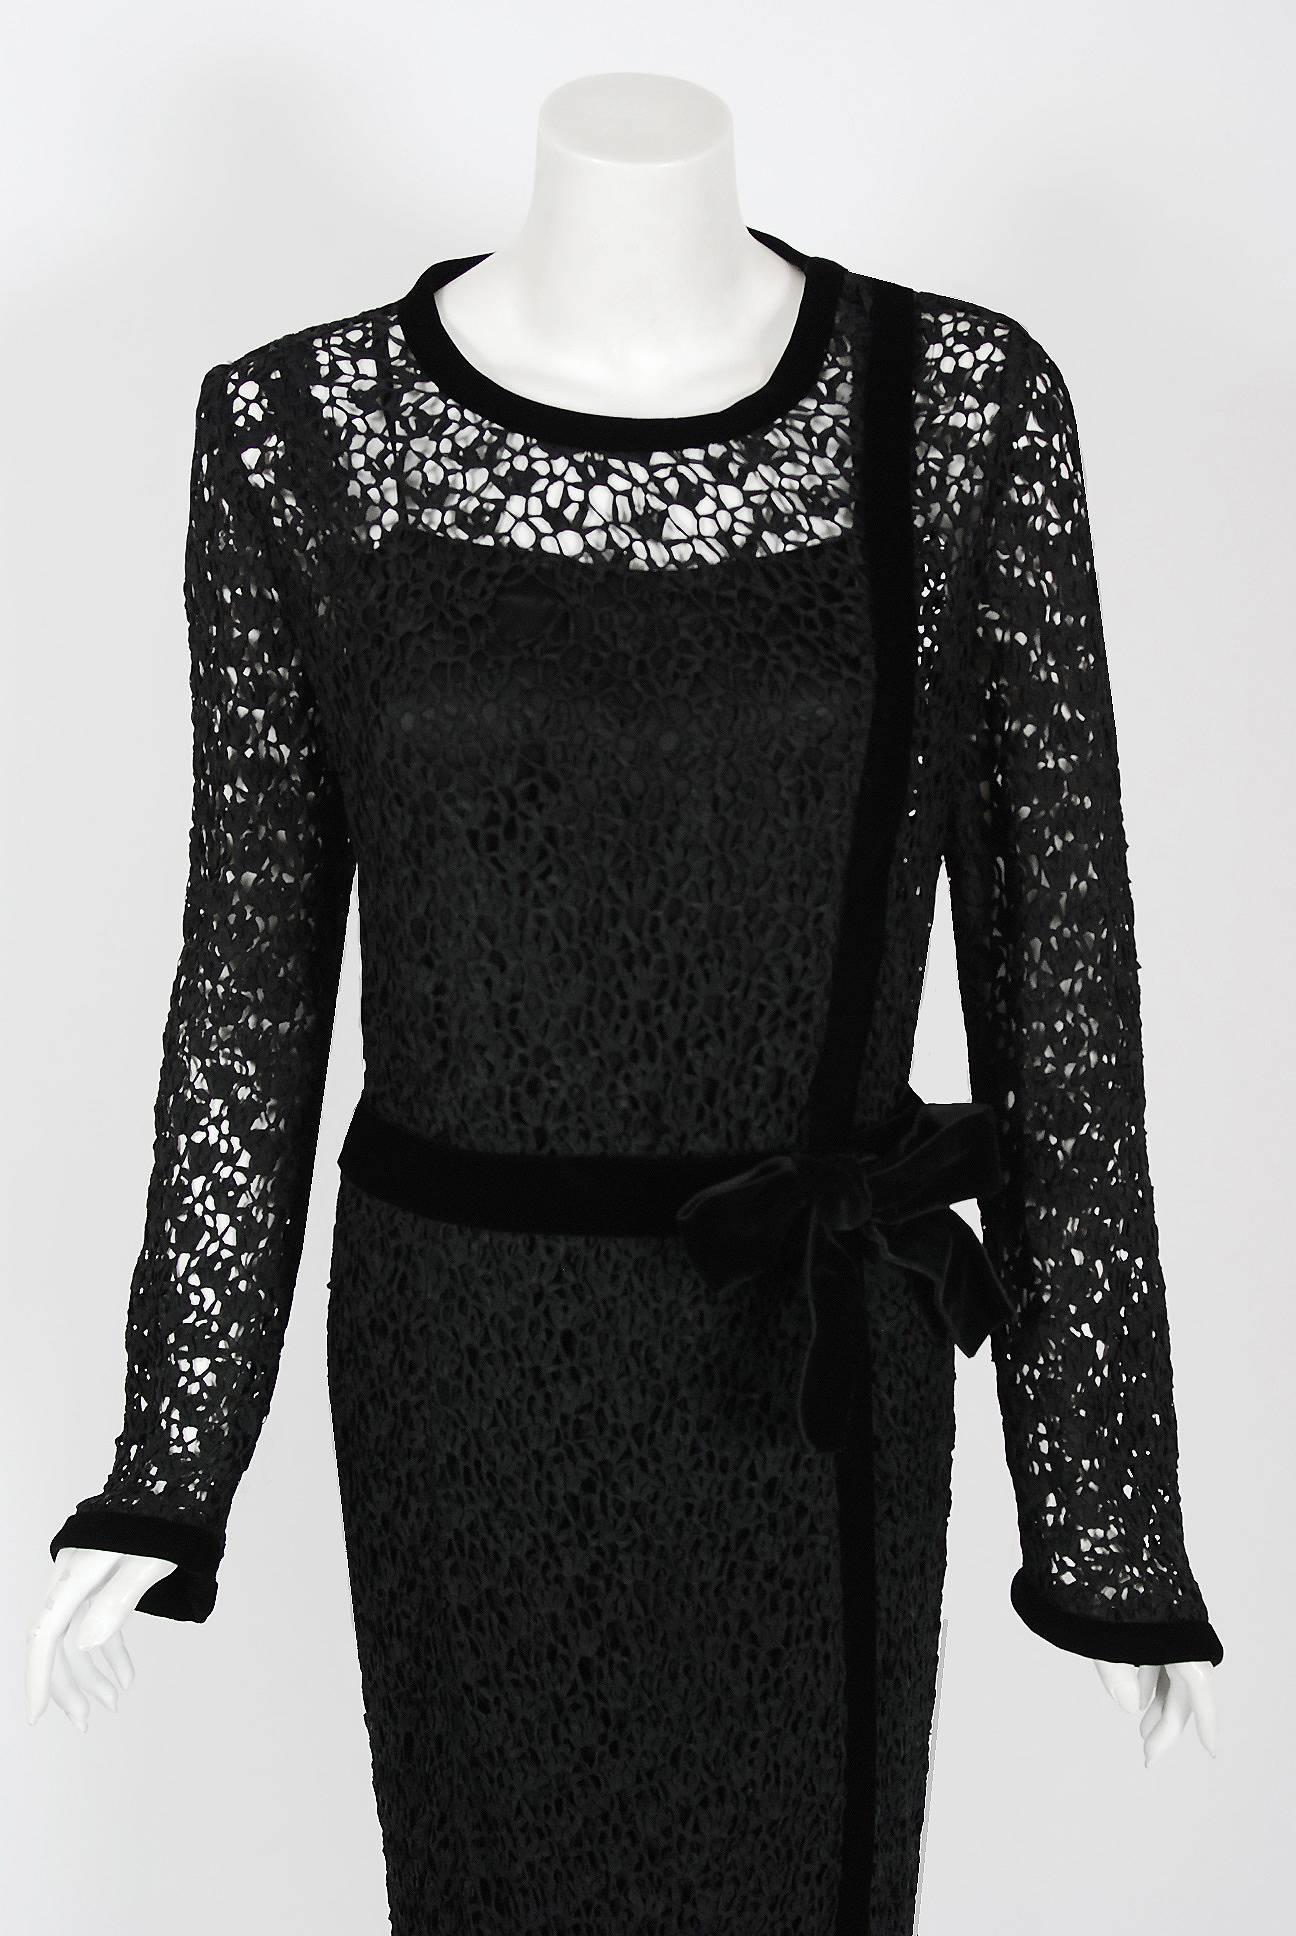 Chanel ist bekannt als eines der luxuriösesten und dekadentesten Modehäuser der Welt. Dieses atemberaubende schwarze Cocktailkleid aus Guipure-Häkelspitze und Samt aus der Herbst/Winter-Kollektion 1973 ist ein perfektes Beispiel dafür, warum diese